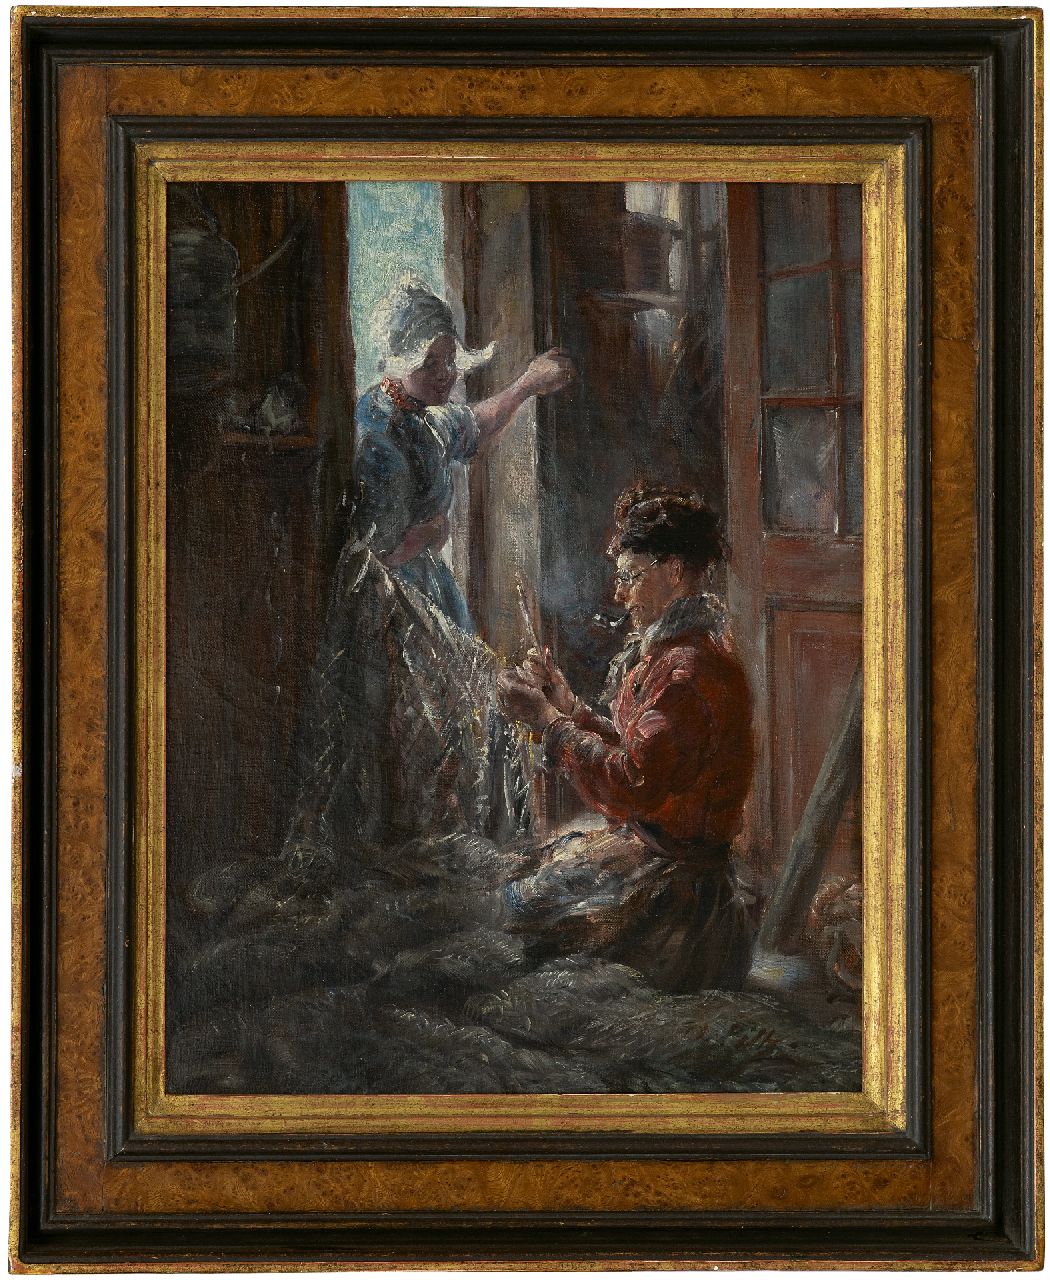 Piltz O.  | Otto Piltz | Schilderijen te koop aangeboden | Netten boeten, Volendam, olieverf op doek 45,6 x 36,4 cm, gesigneerd rechtsonder en te dateren ca. 1909